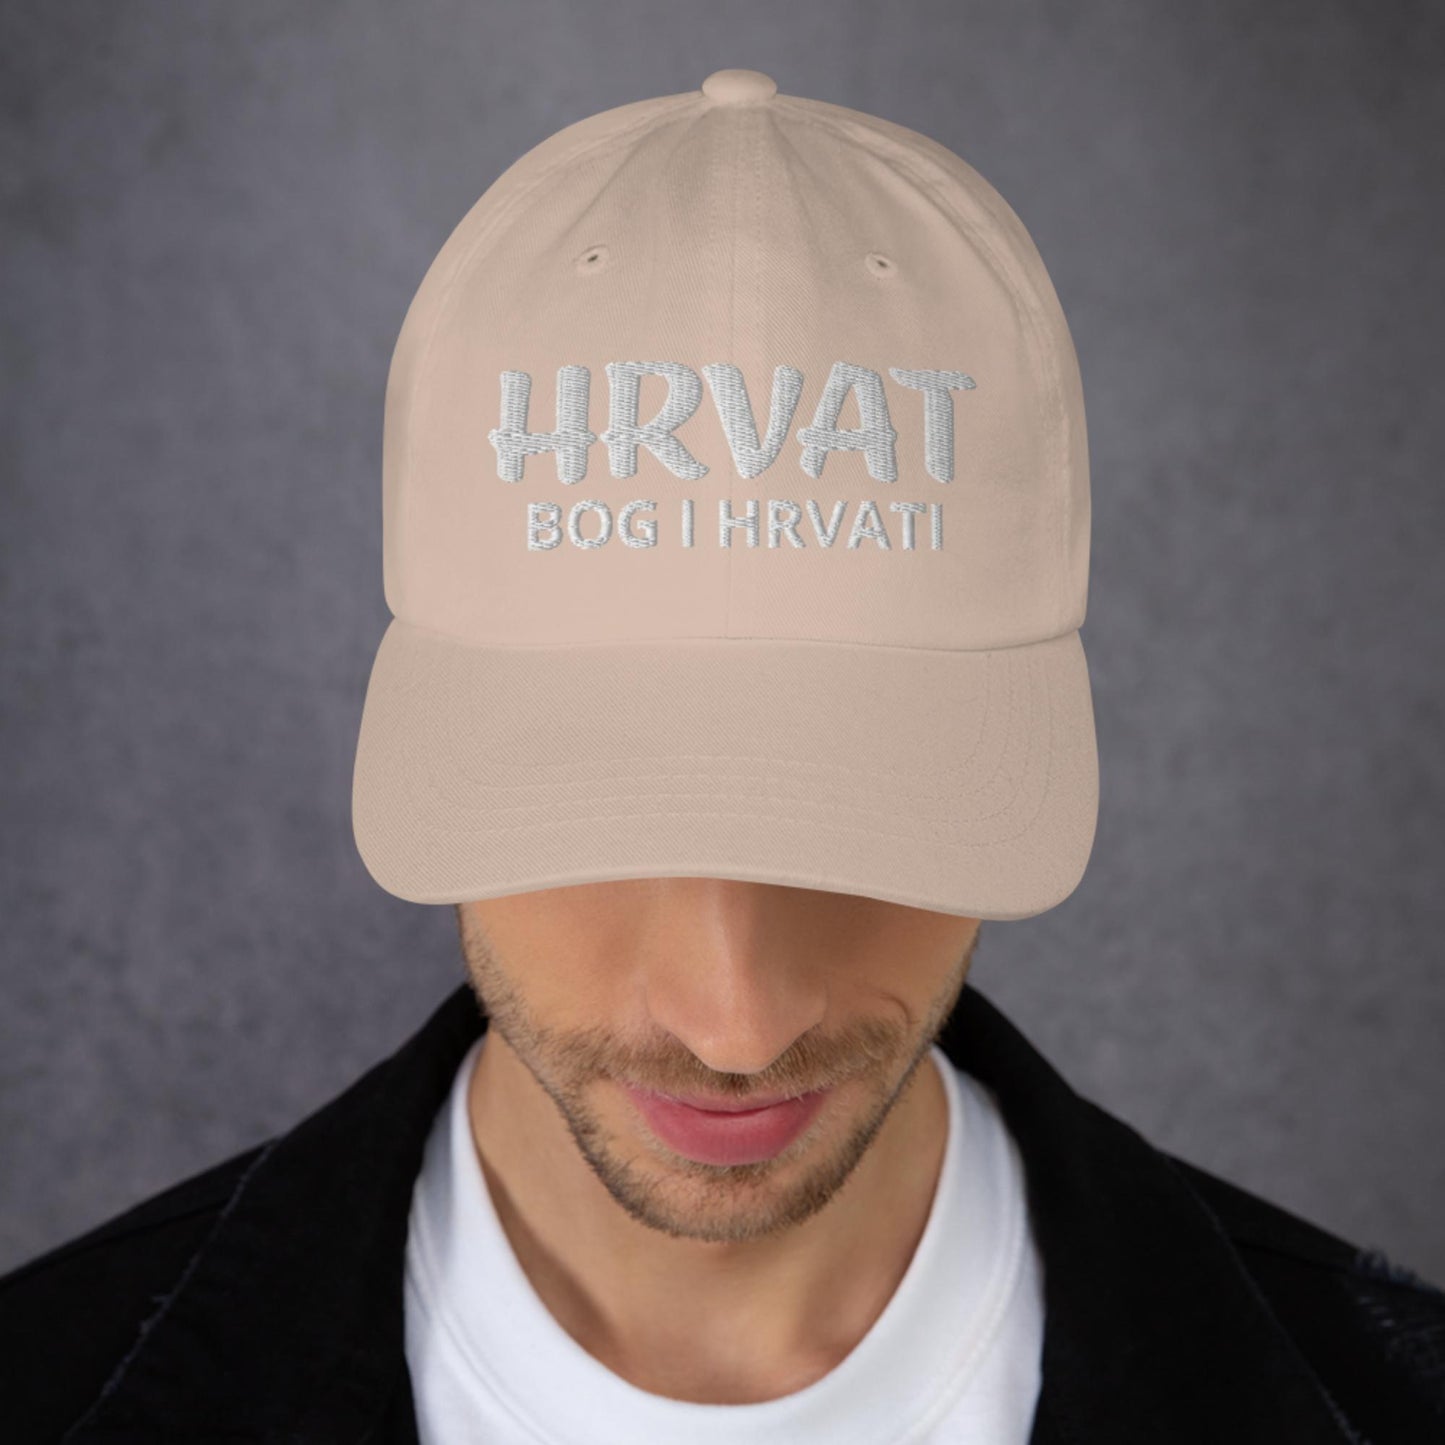 Croatian Hat - Bog I Hrvat, Adjustable Strap, Unstructured, Low-Profile